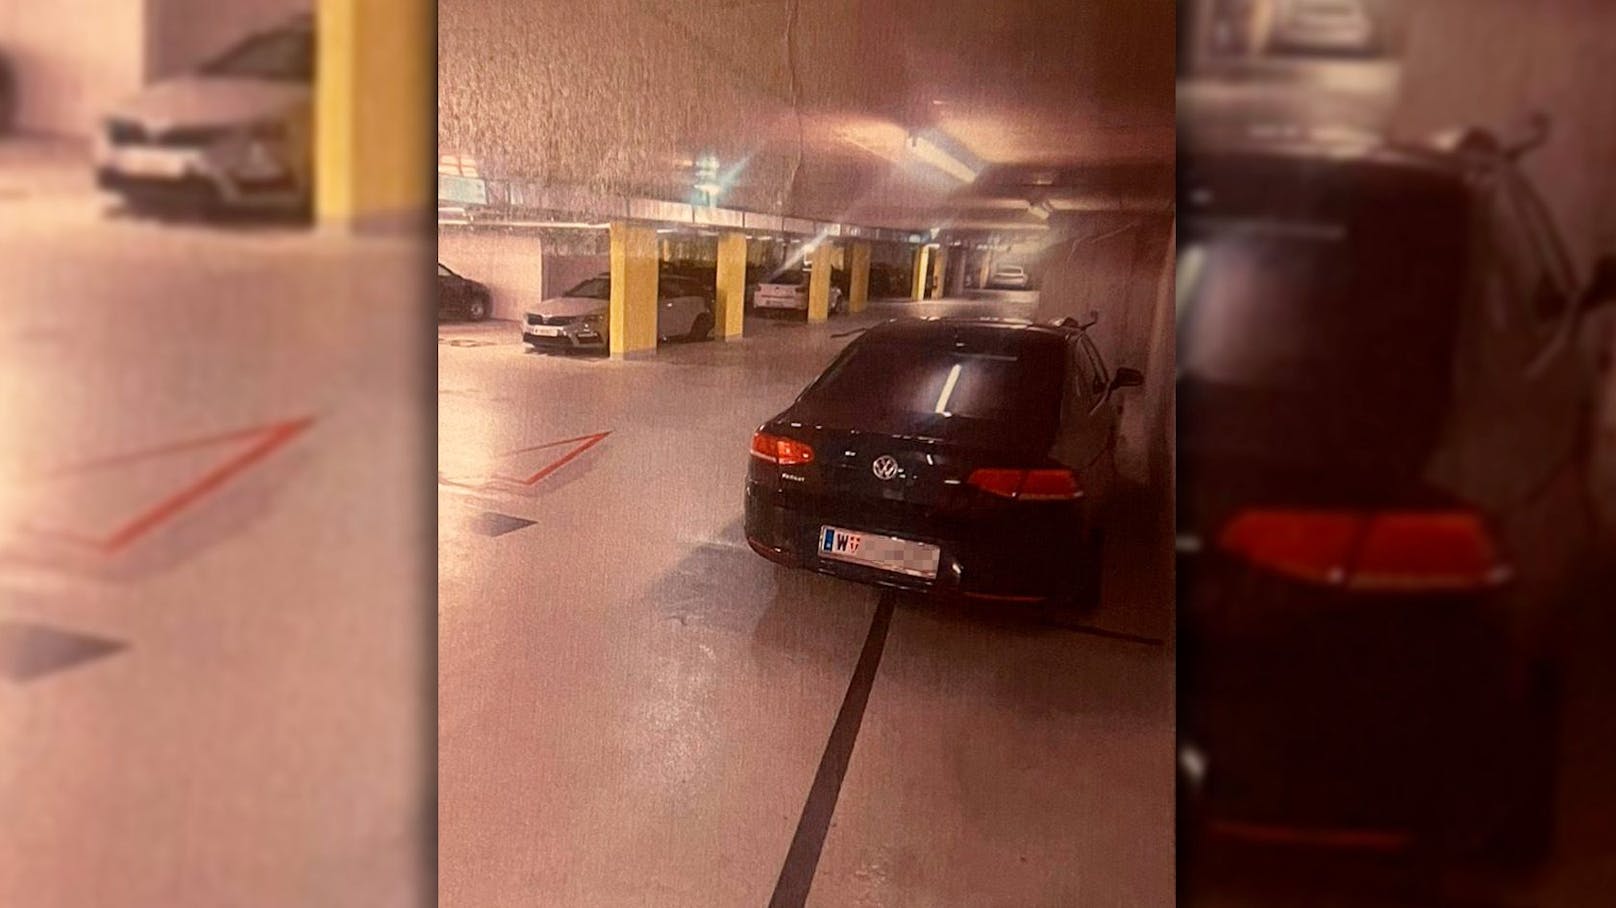 Wiener kassiert Besitzstörungsklage in eigener Garage